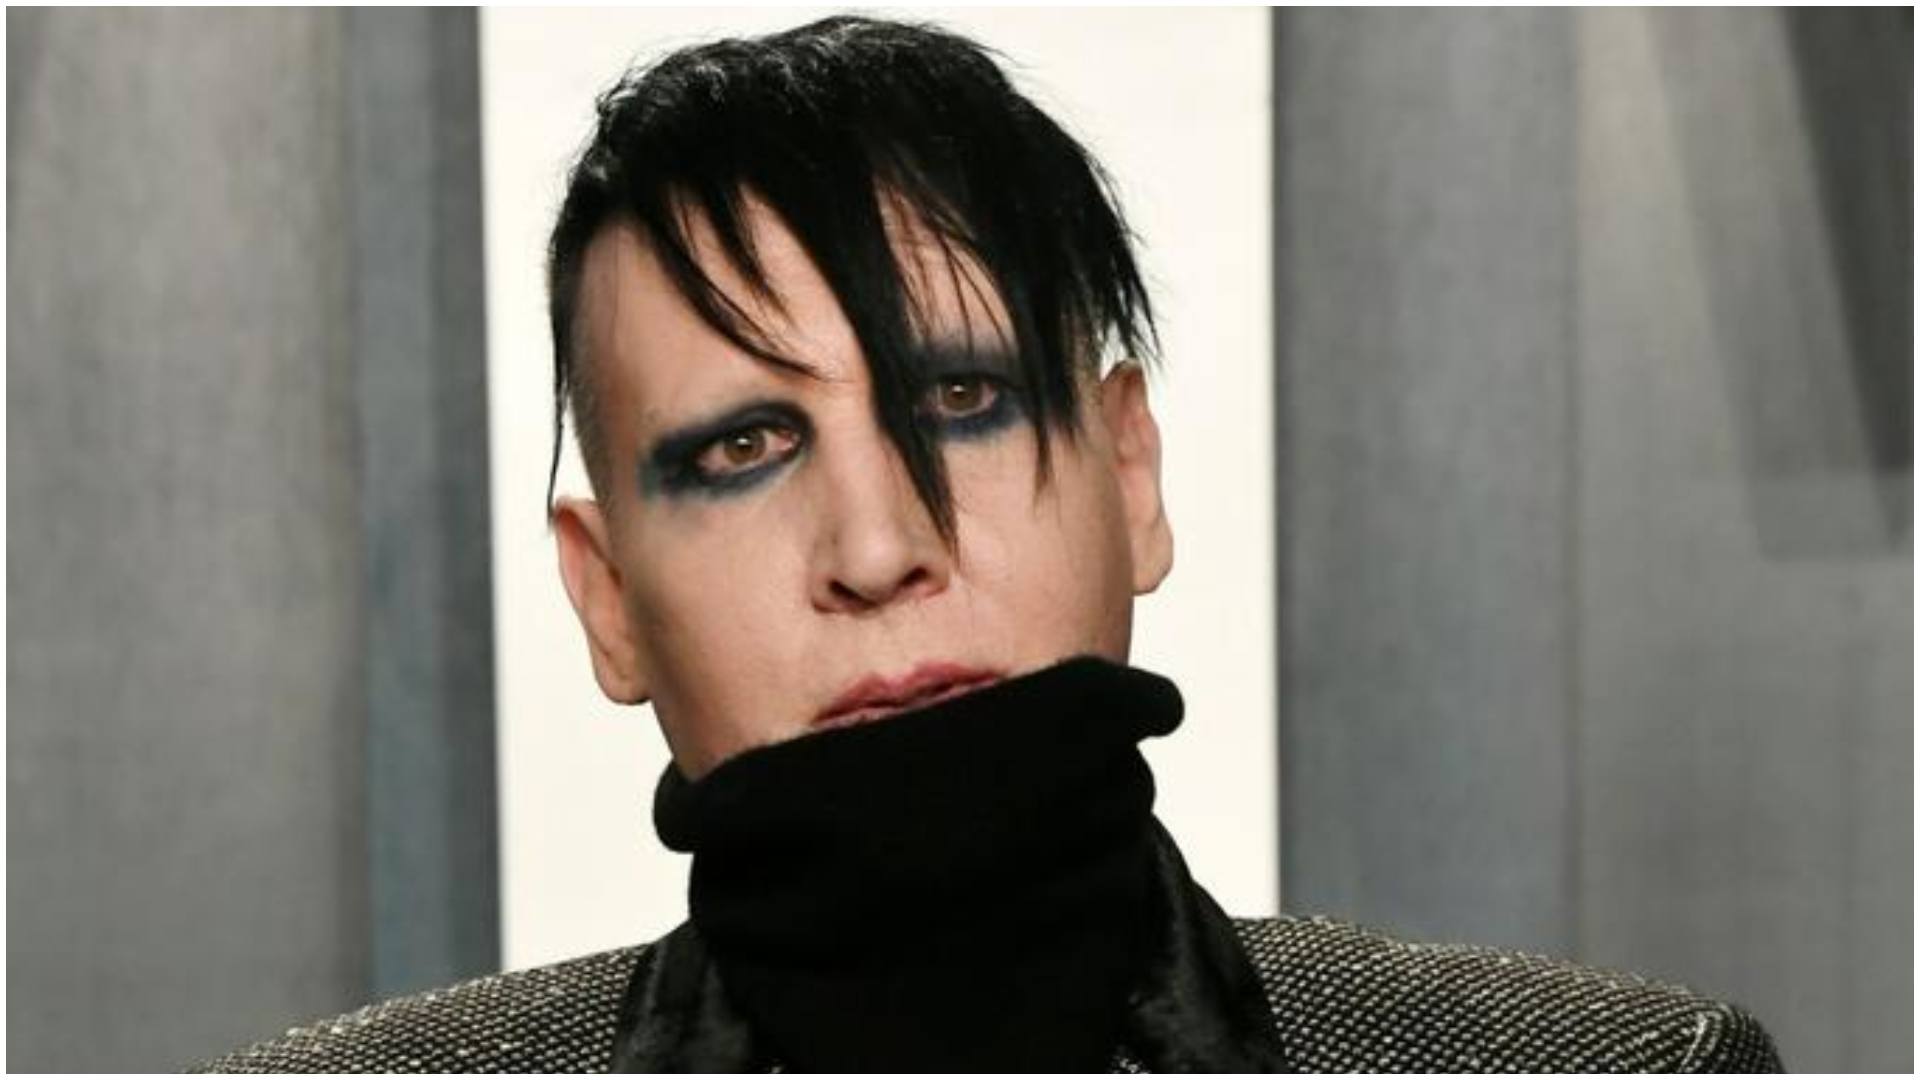 Manson ha sido señalado en varias ocasiones por agredir o abusar a mujeres. Foto: archivo / AFP